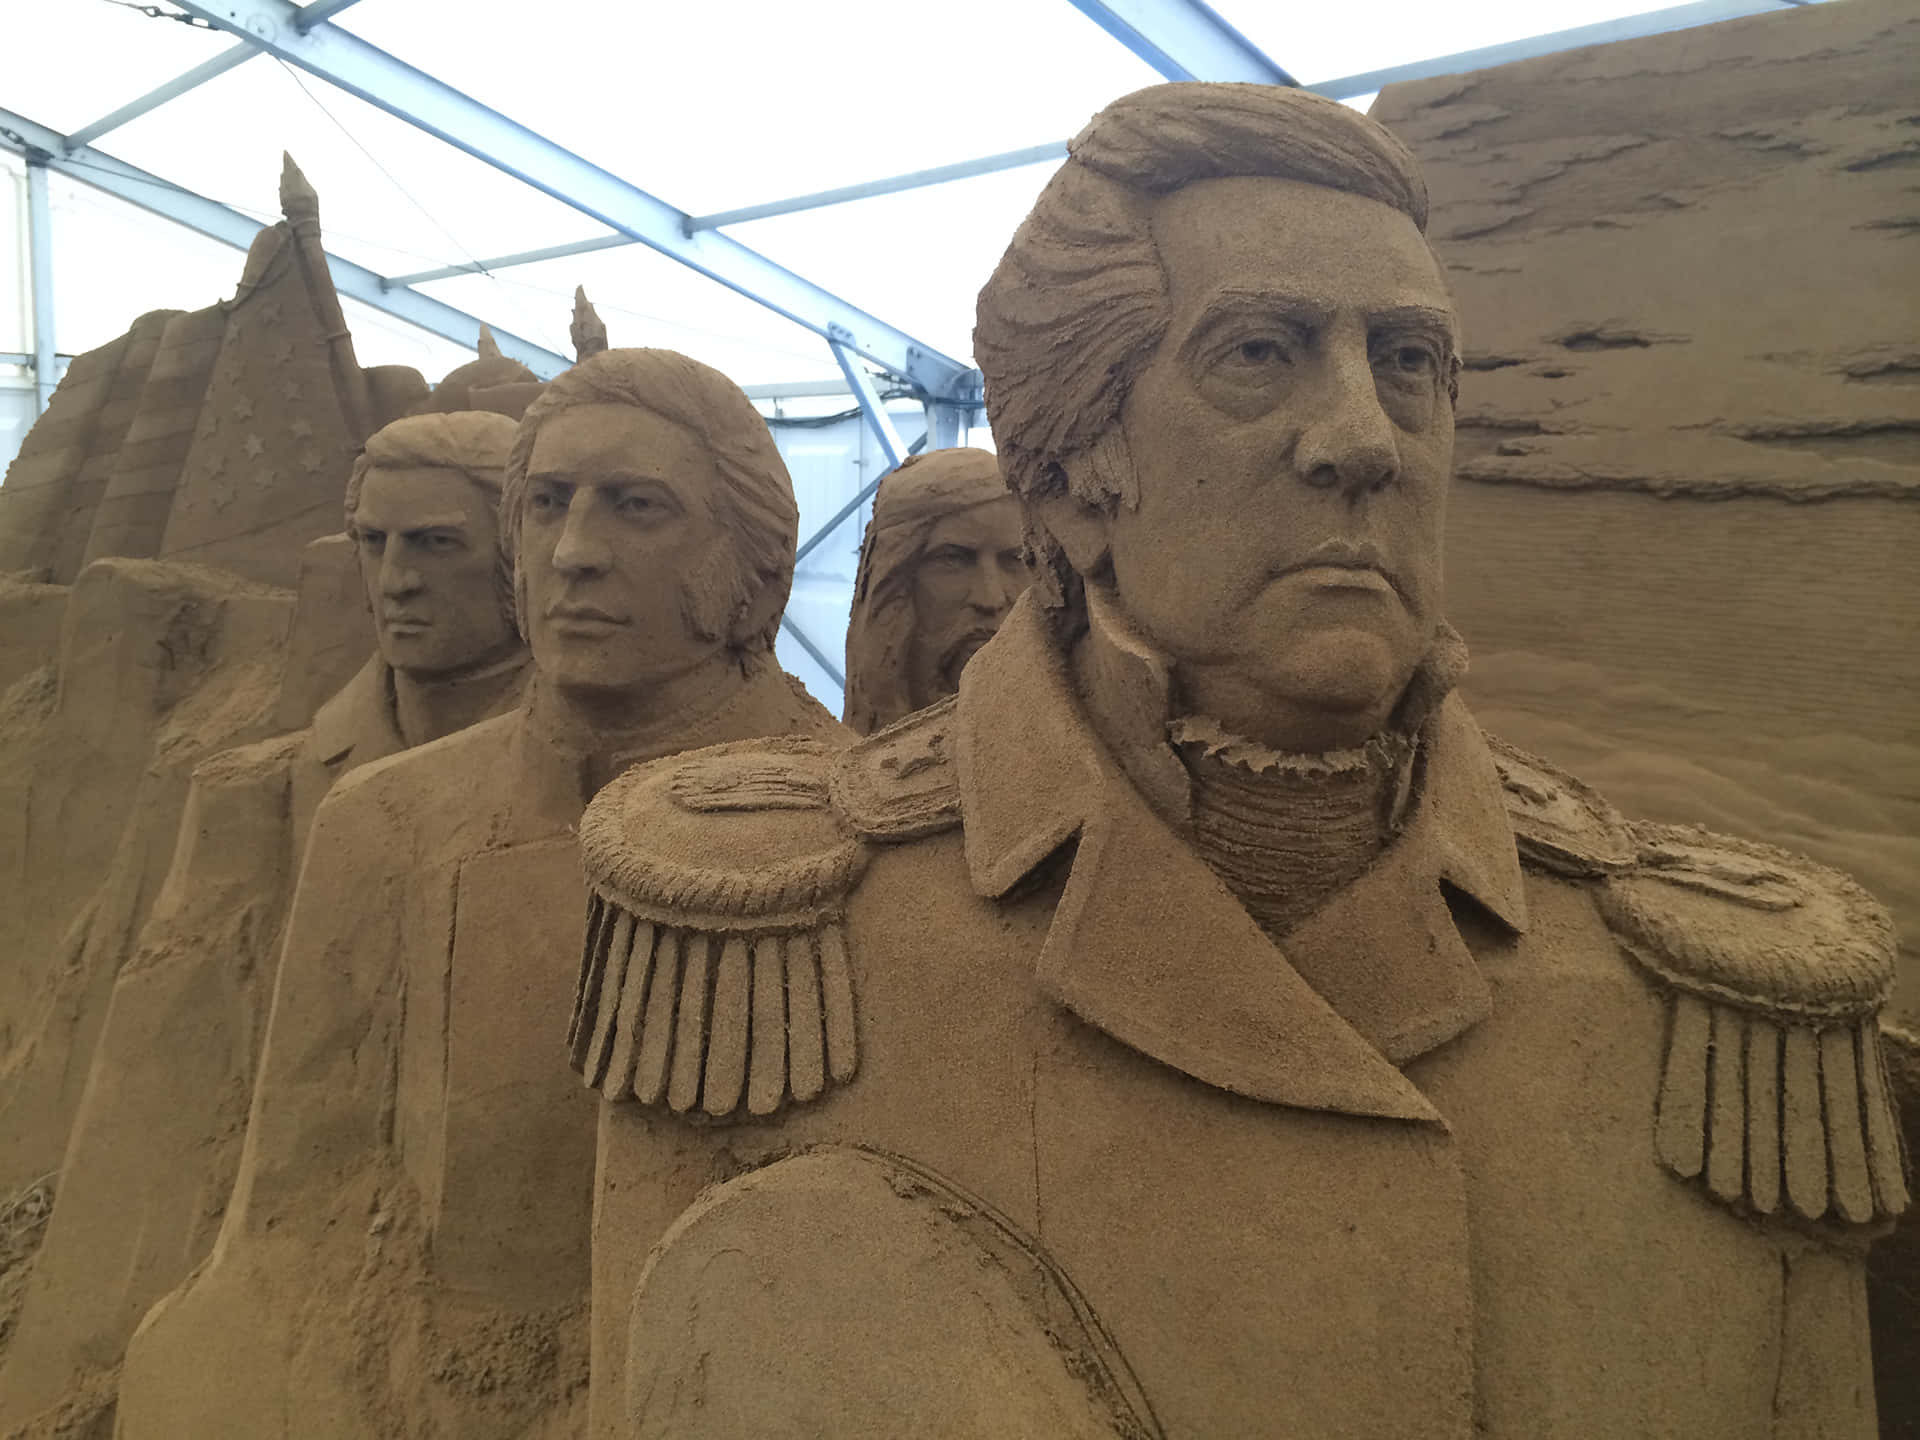 Sand Sculptures Of Men In Uniform